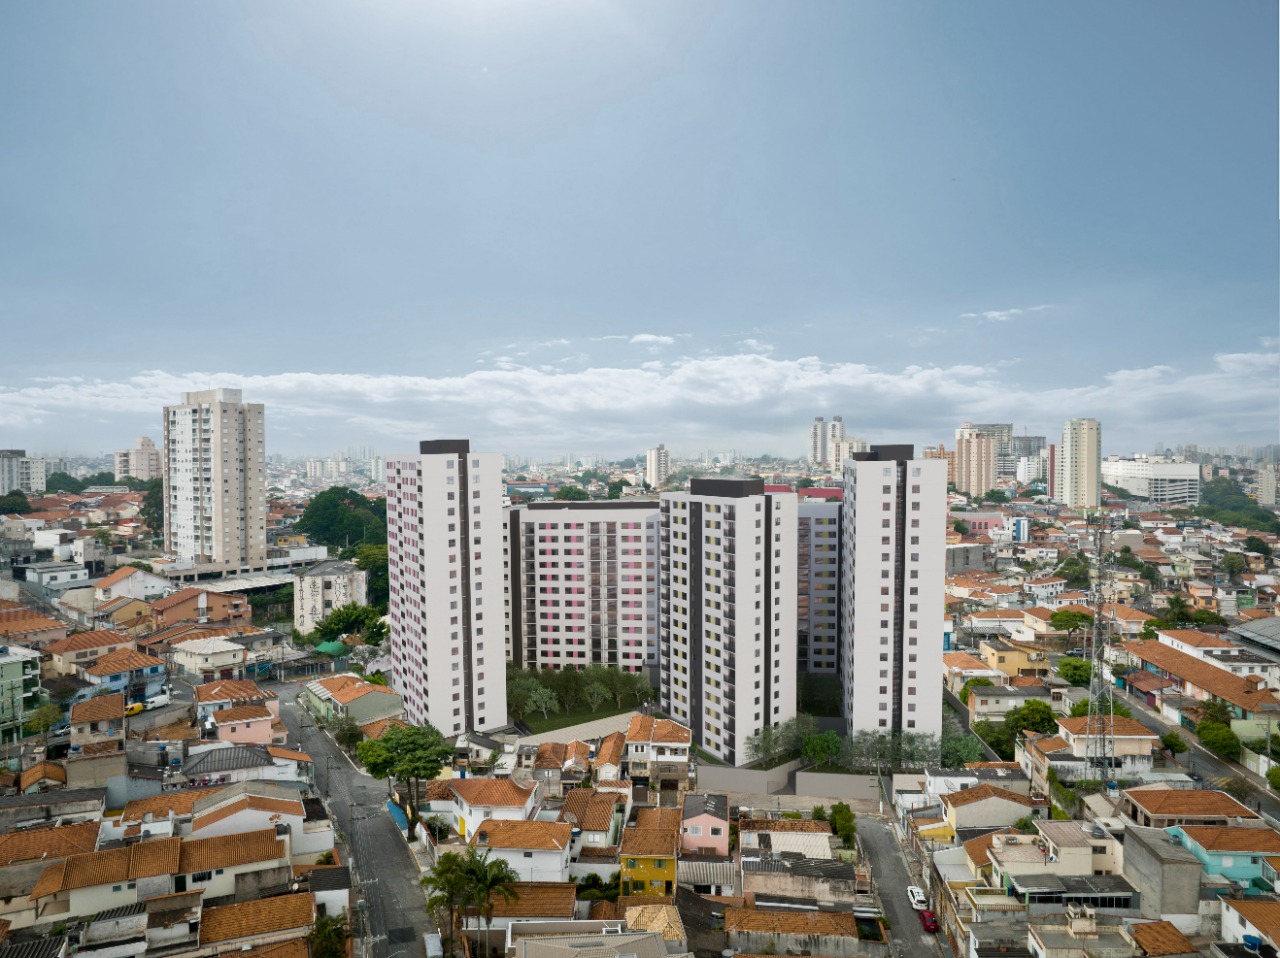 Foto Ilustrativa mostrando em destaque um conjunto de prédios e ao redor a cidade de São Paulo.